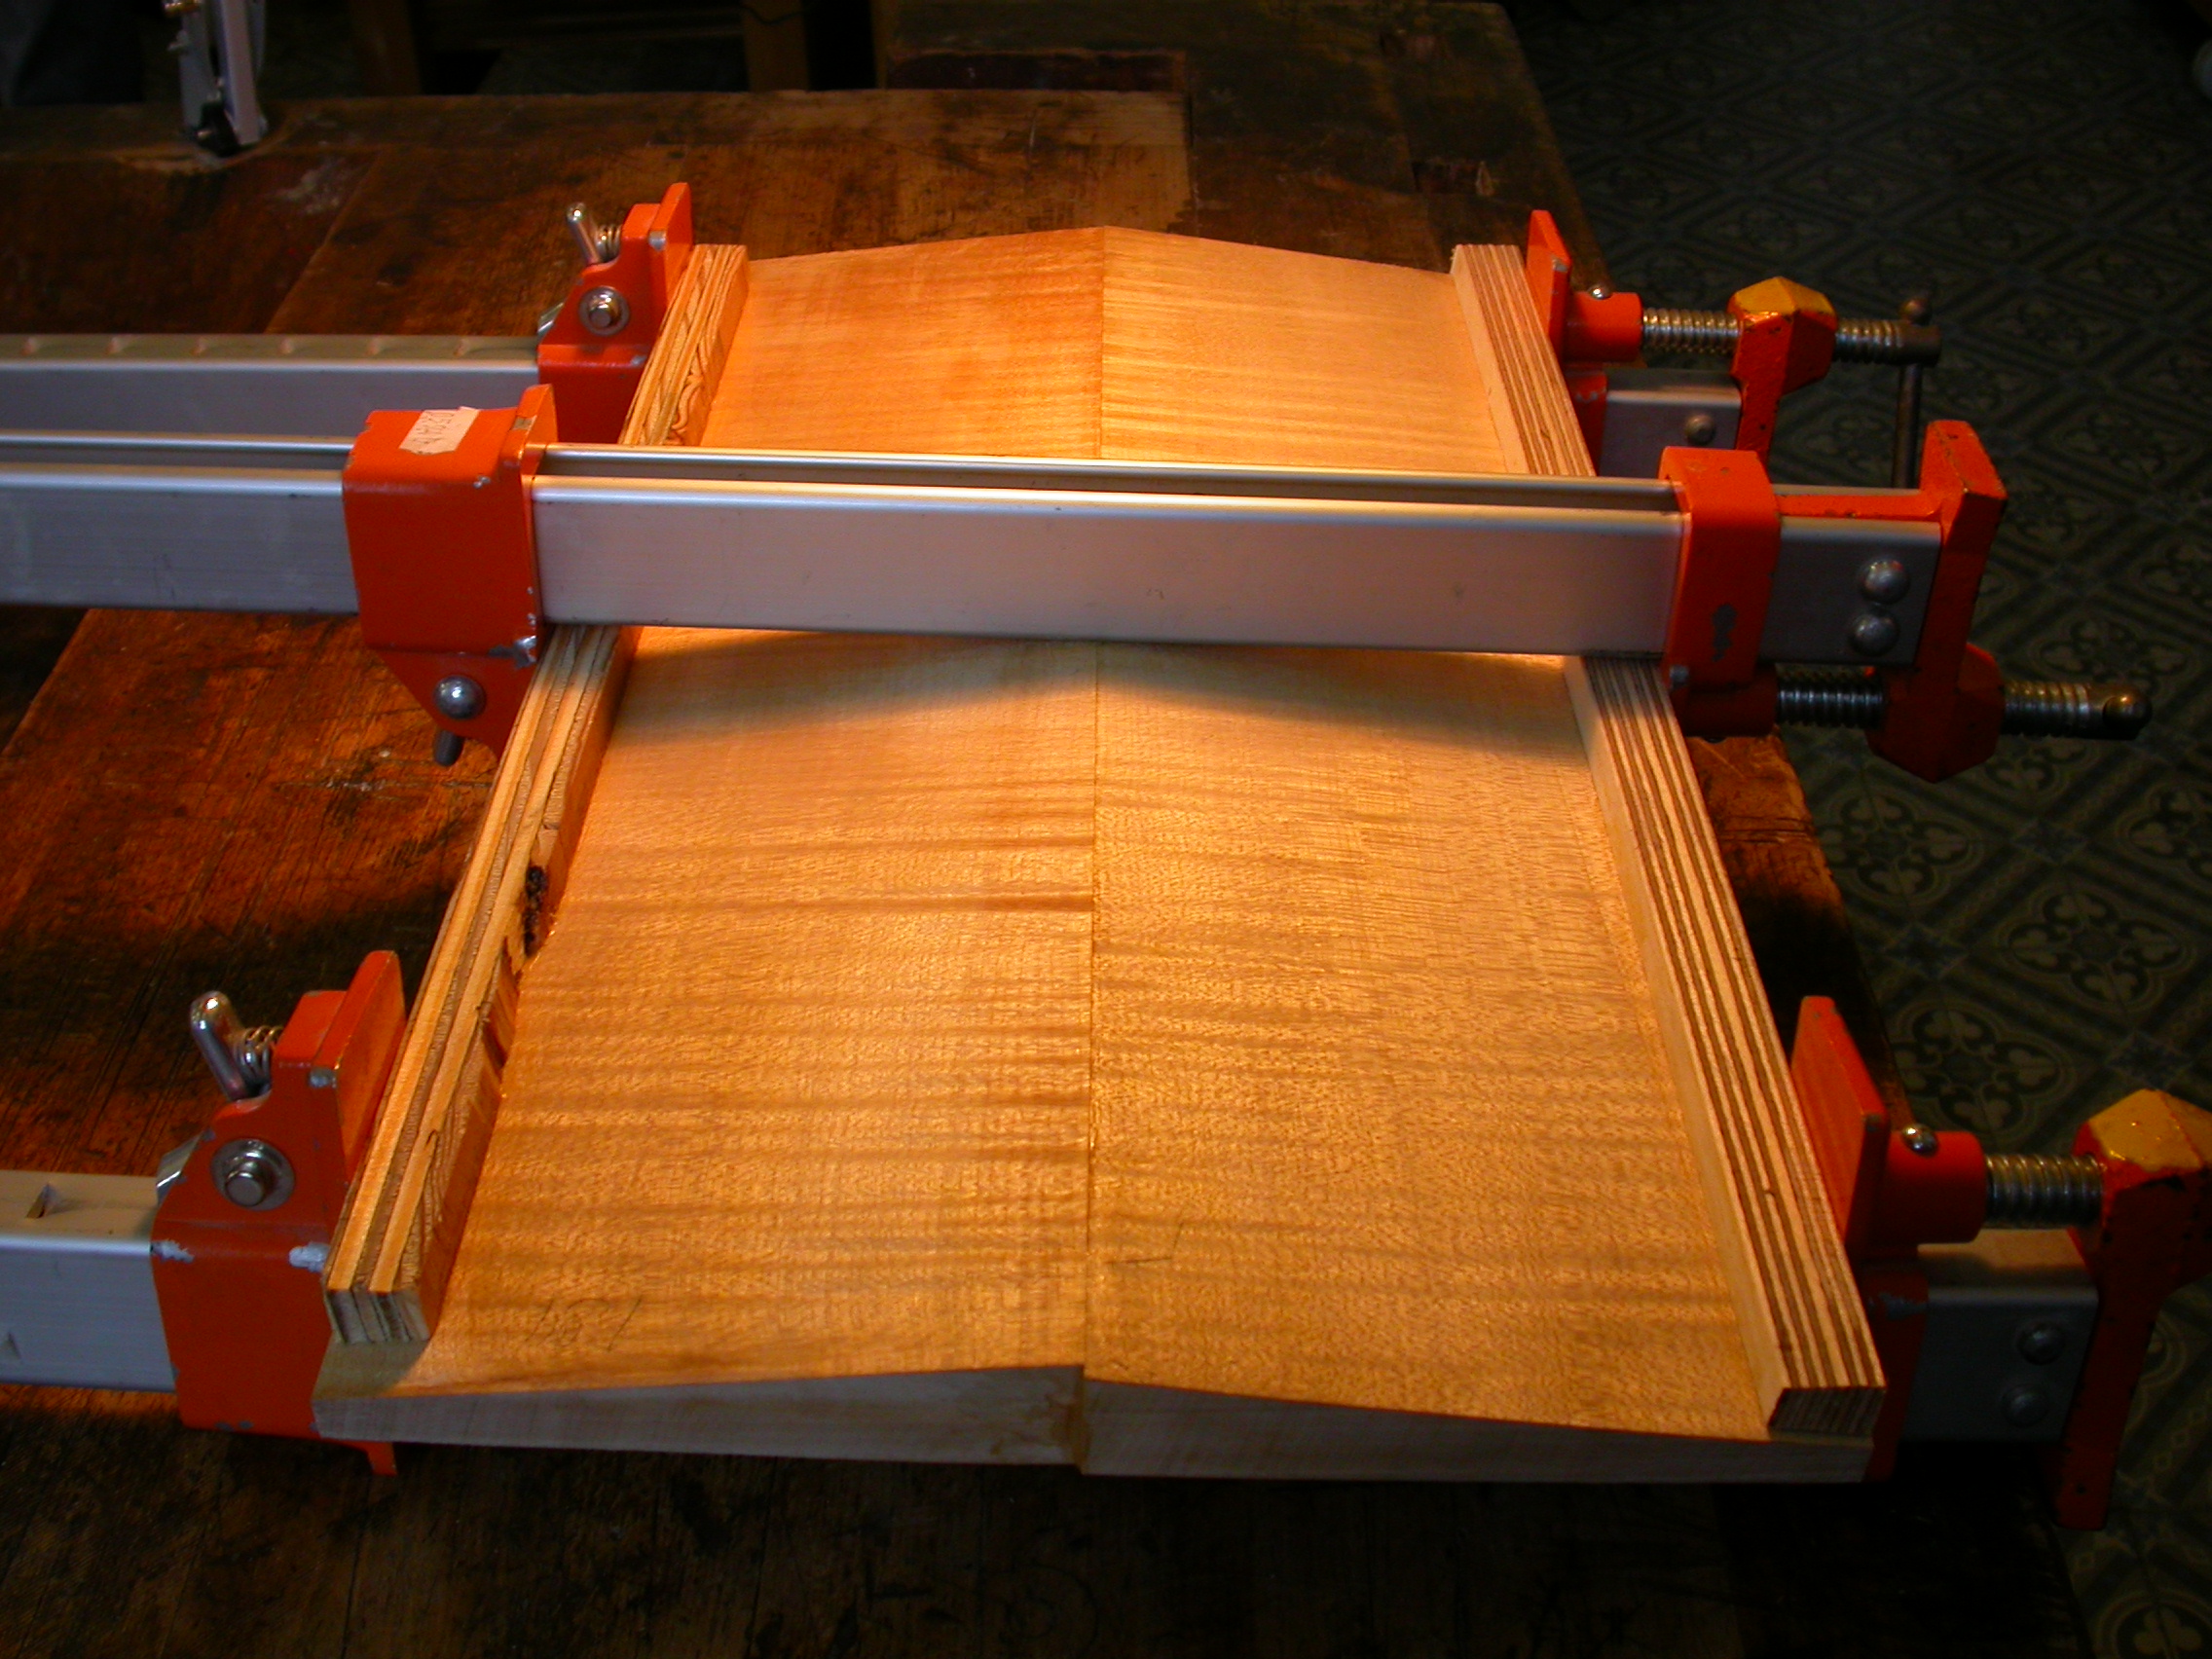 paul wood wooden instrument tools craft benchscrew